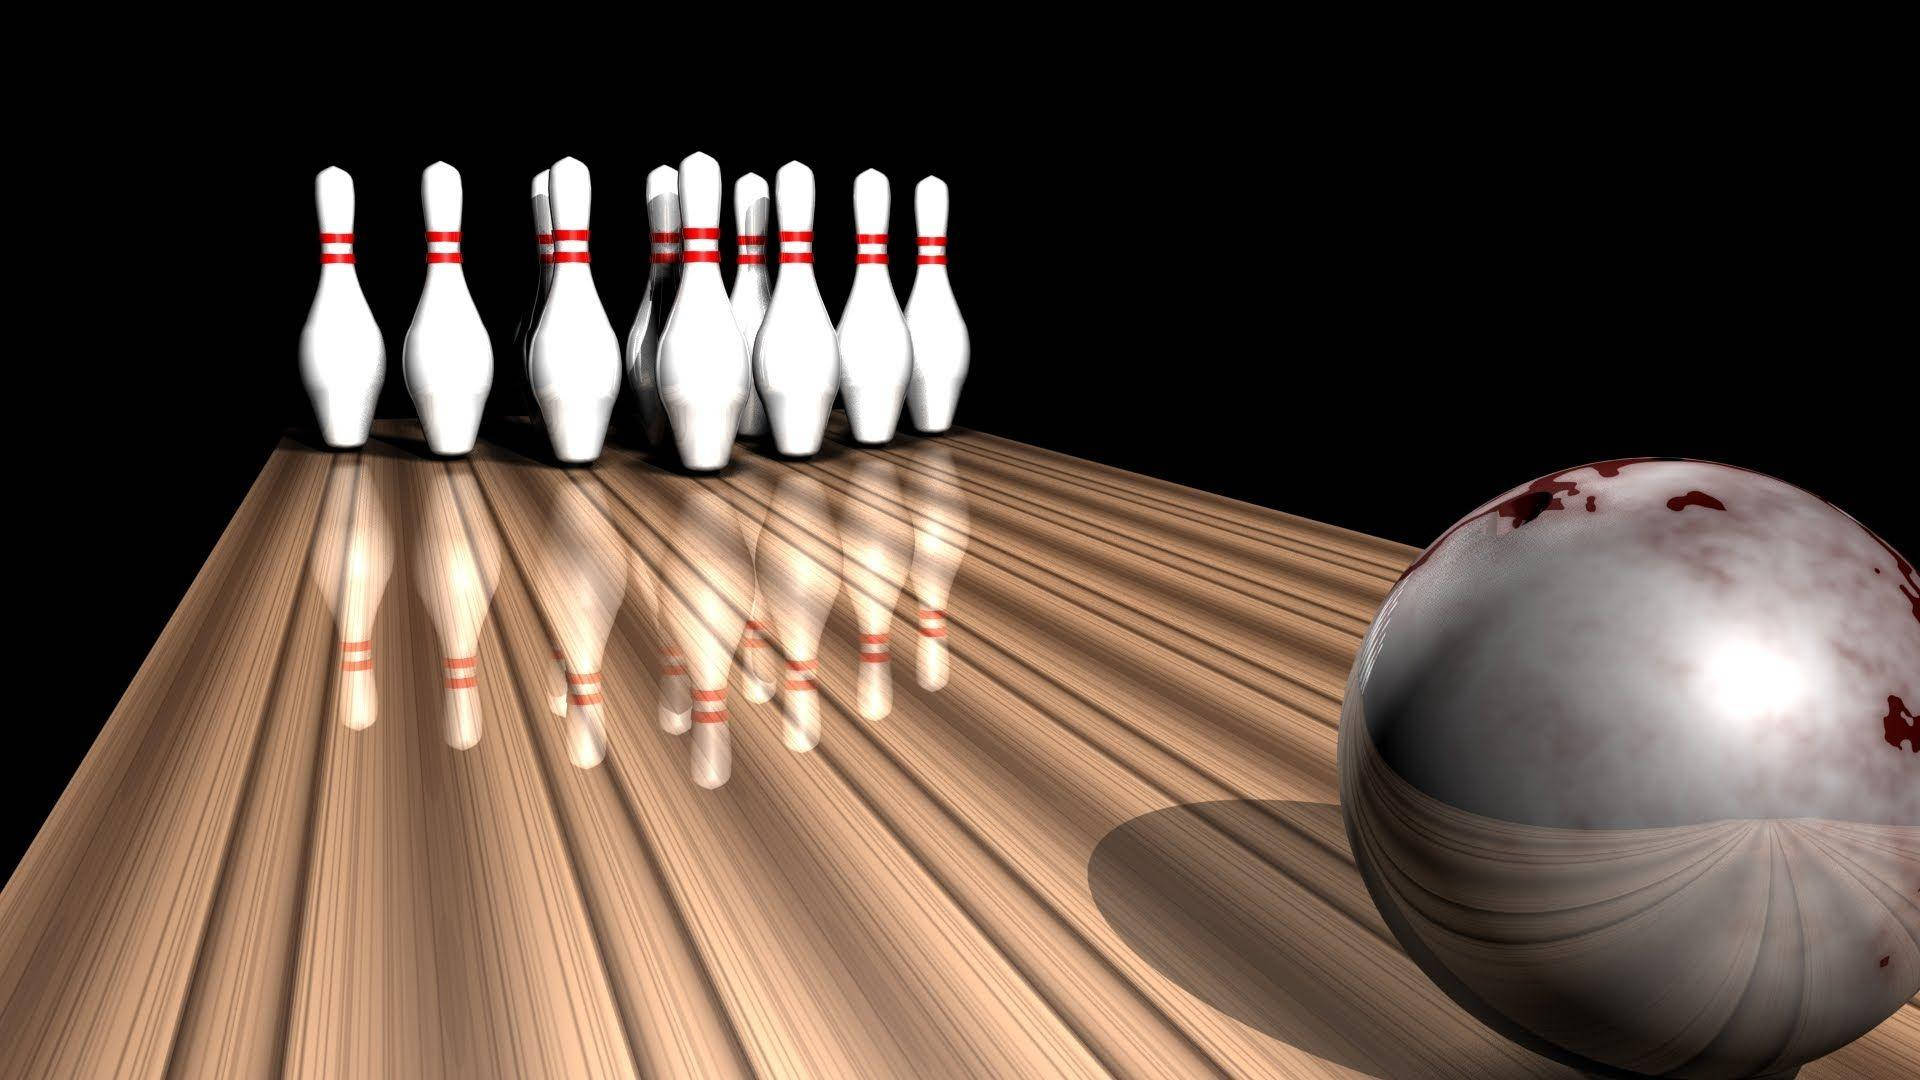 Download 3D Metallic Bowling Ball Wallpaper